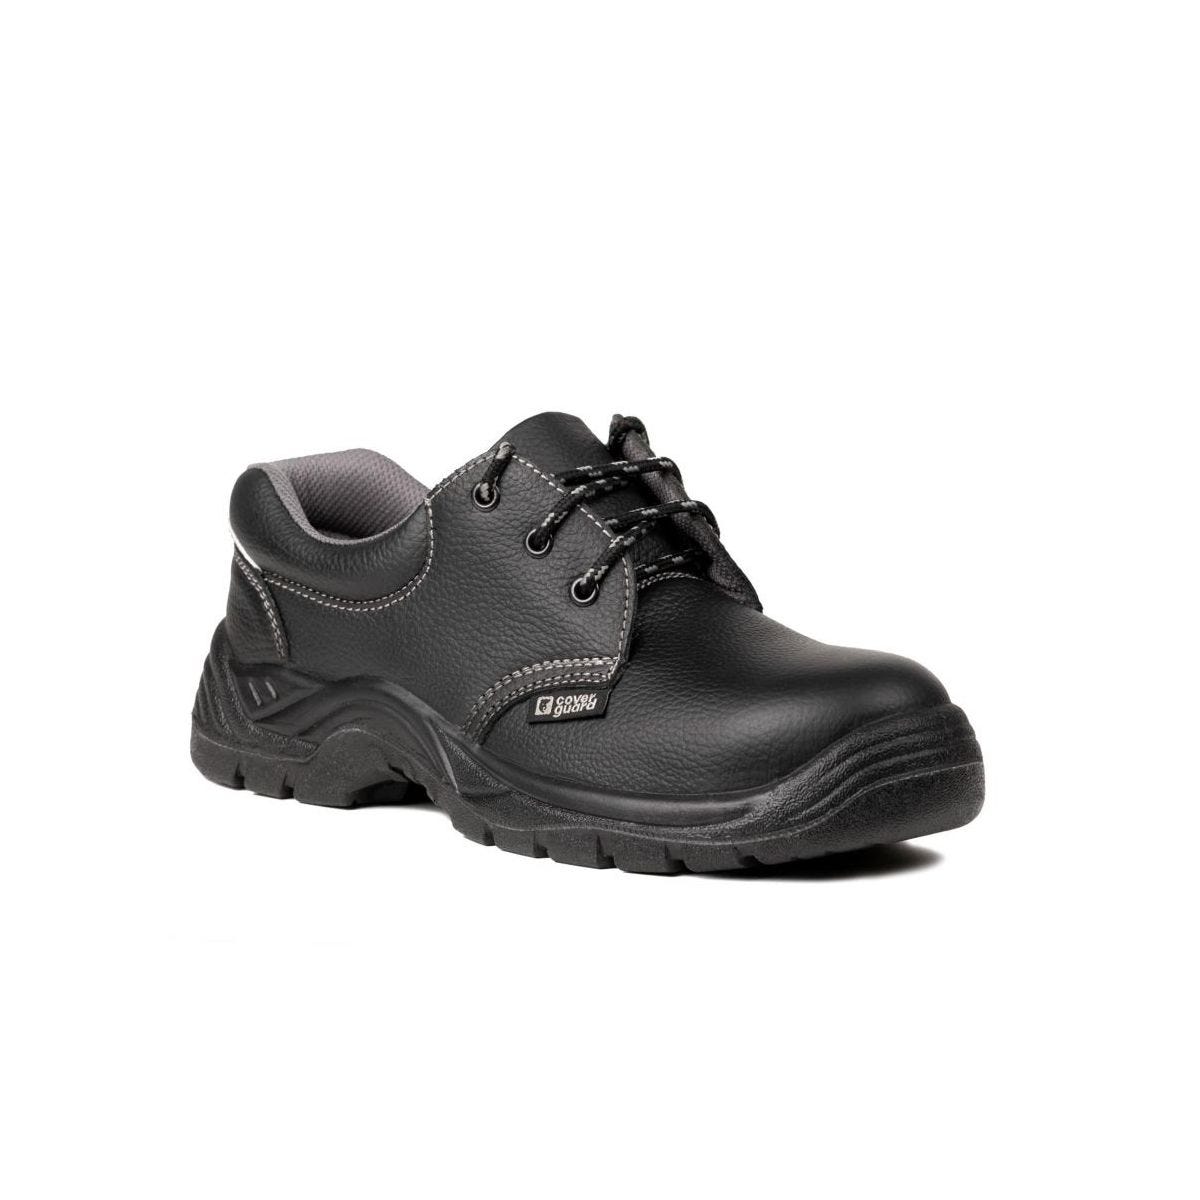 Chaussures de sécurité basses AGATE II S3 Noir - Coverguard - Taille 47 0